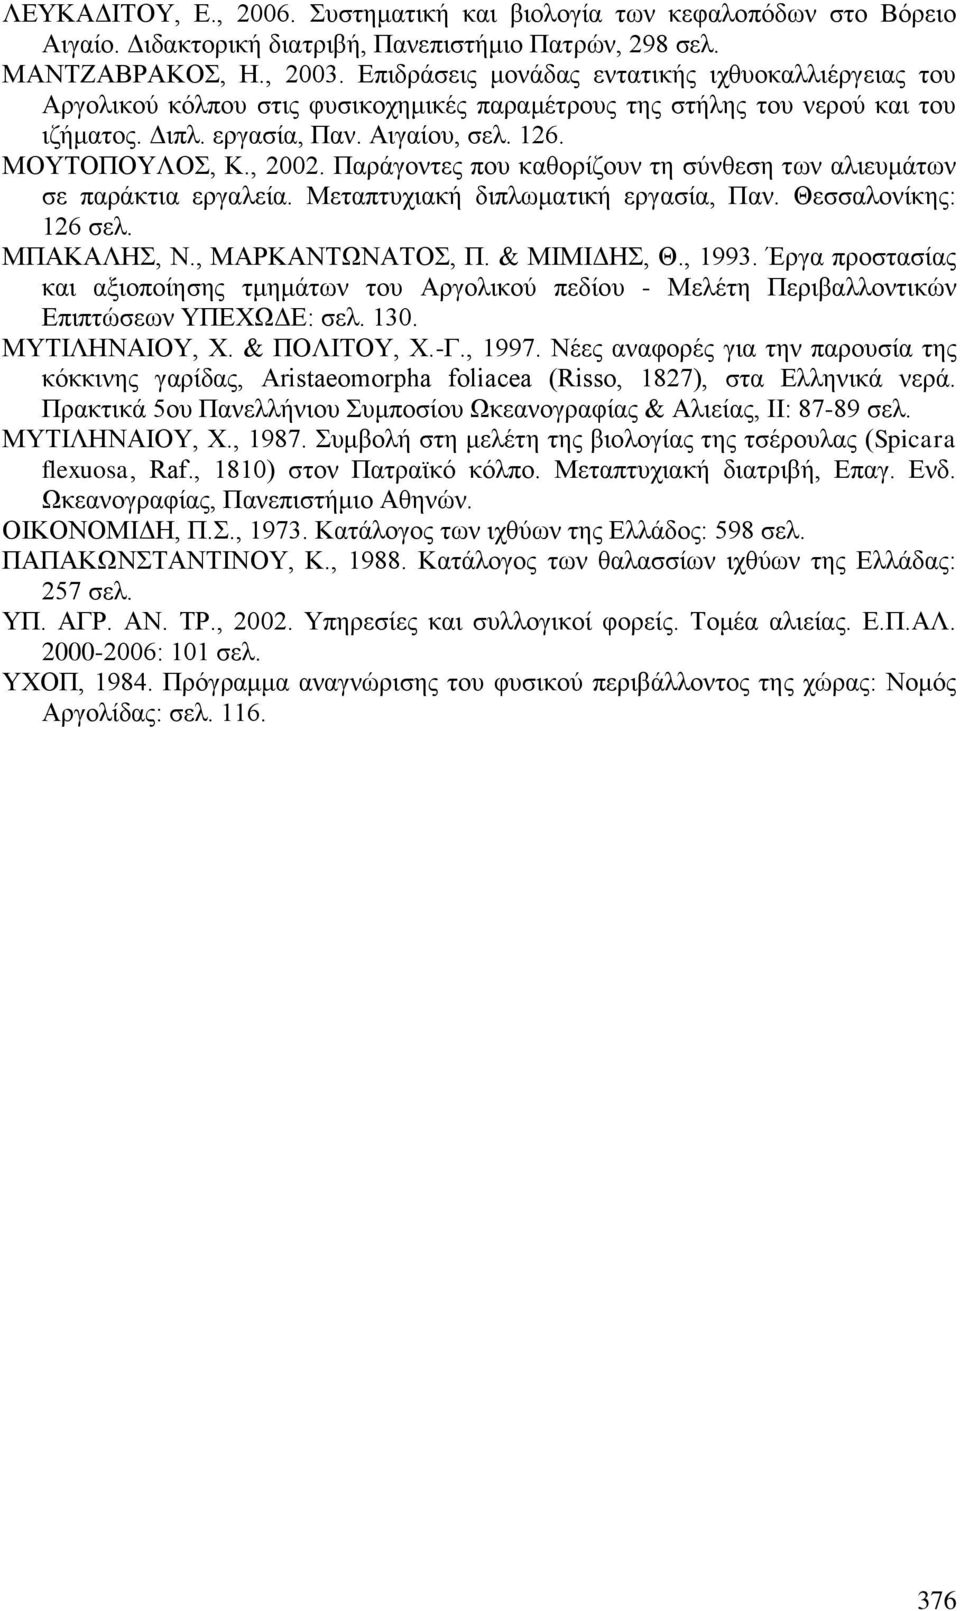 Παράγοντες που καθορίζουν τη σύνθεση των αλιευμάτων σε παράκτια εργαλεία. Μεταπτυχιακή διπλωματική εργασία, Παν. Θεσσαλονίκης: 126 σελ. ΜΠΑΚΑΛΗΣ, Ν., ΜΑΡΚΑΝΤΩΝΑΤΟΣ, Π. & ΜΙΜΙΔΗΣ, Θ., 1993.